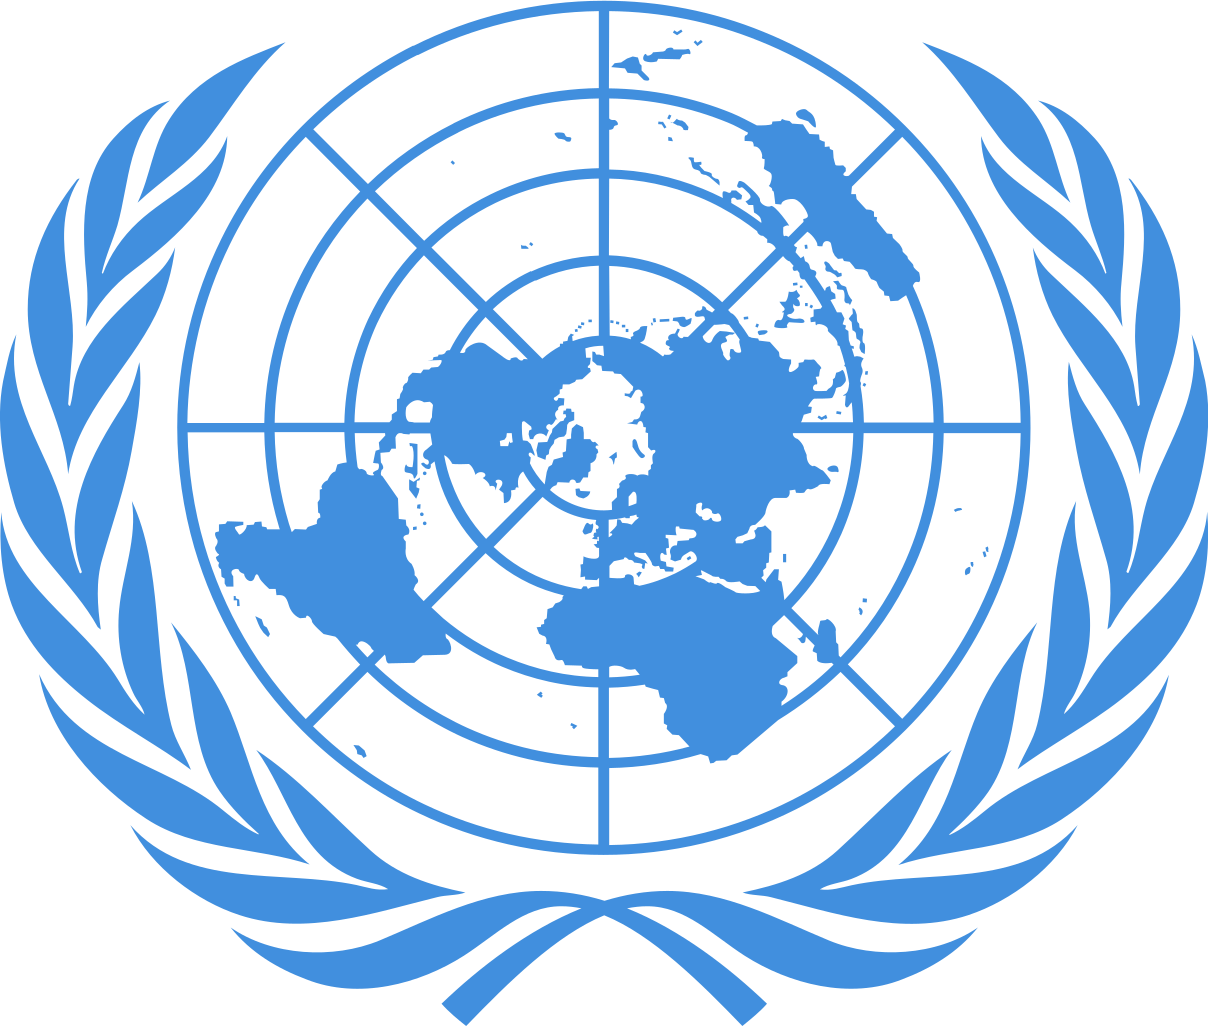 United Nations Emblem PNG Download Image